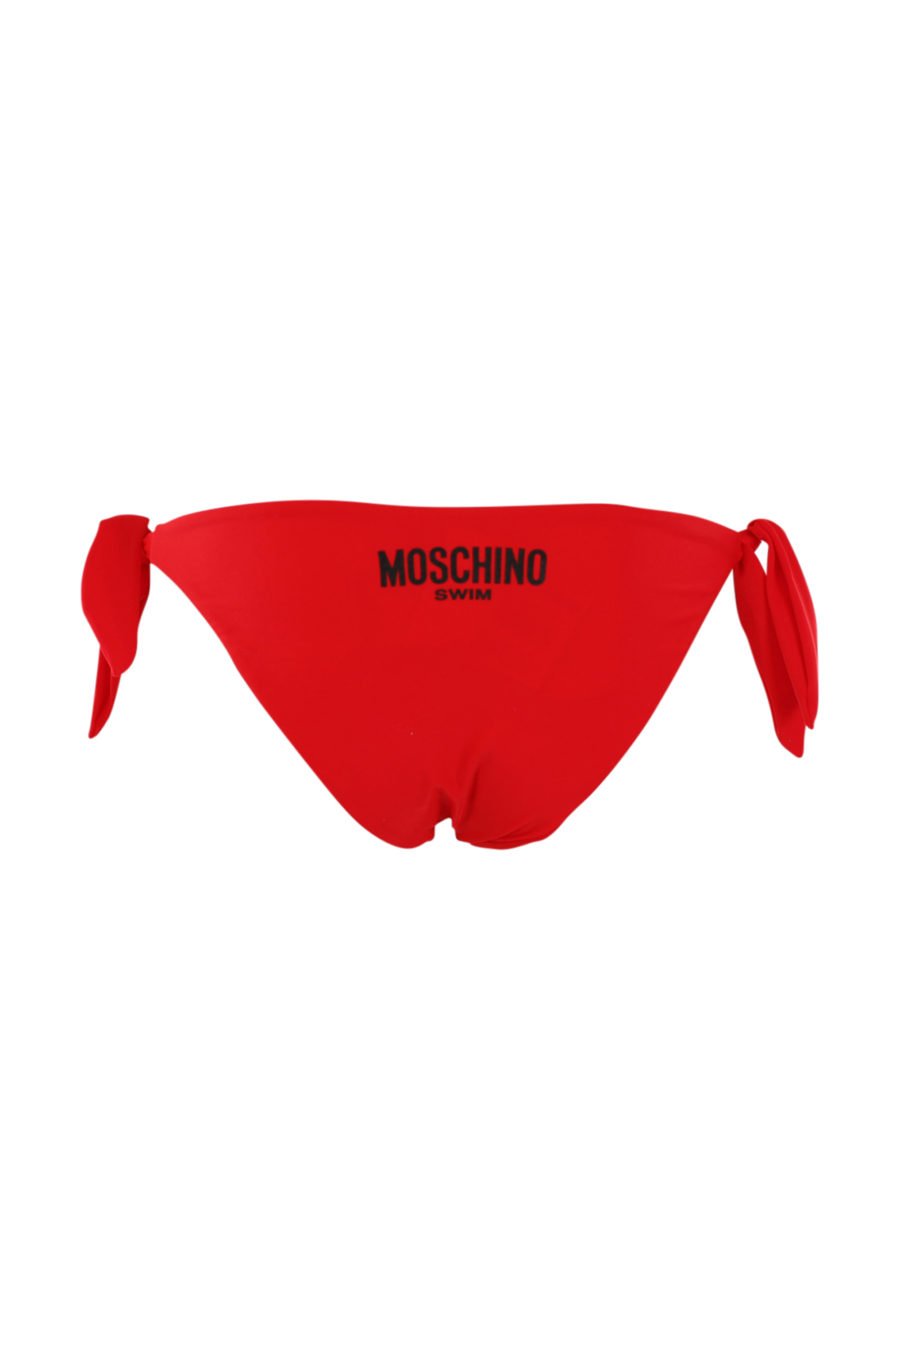 Roter Badeanzug mit schwarzem Logo - IMG 0930